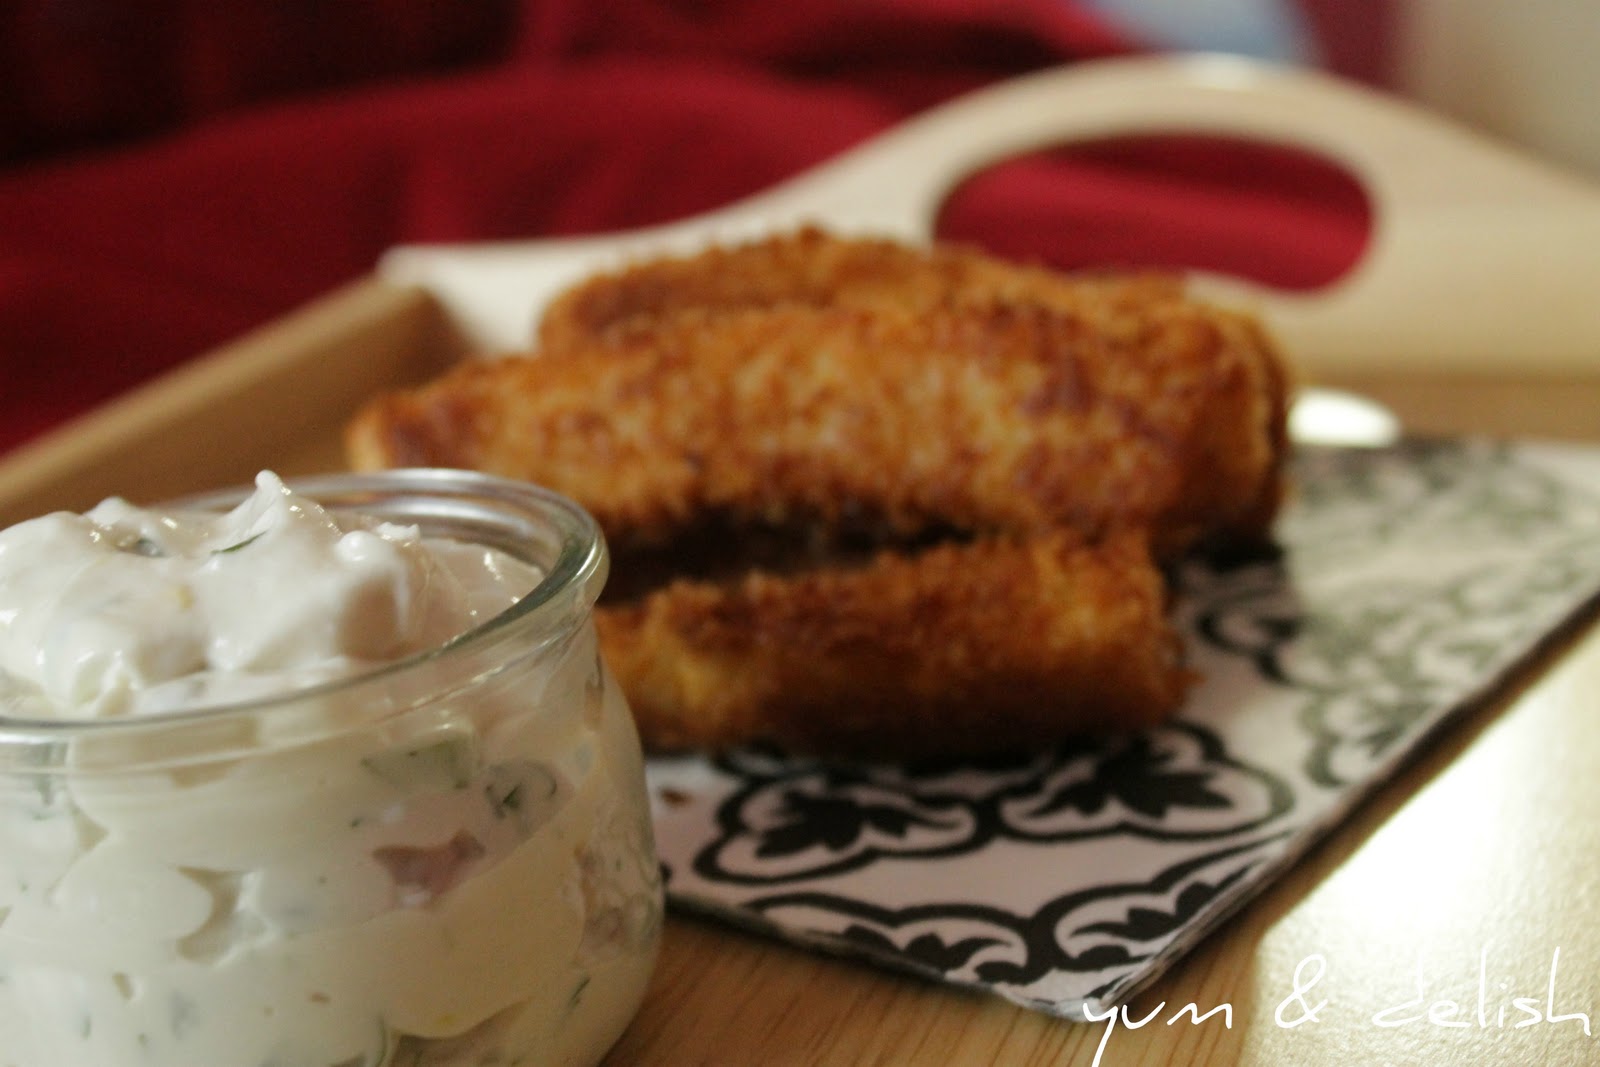 Yum & Delish: Crispy Fried Fish with Mayo Tahini Dip